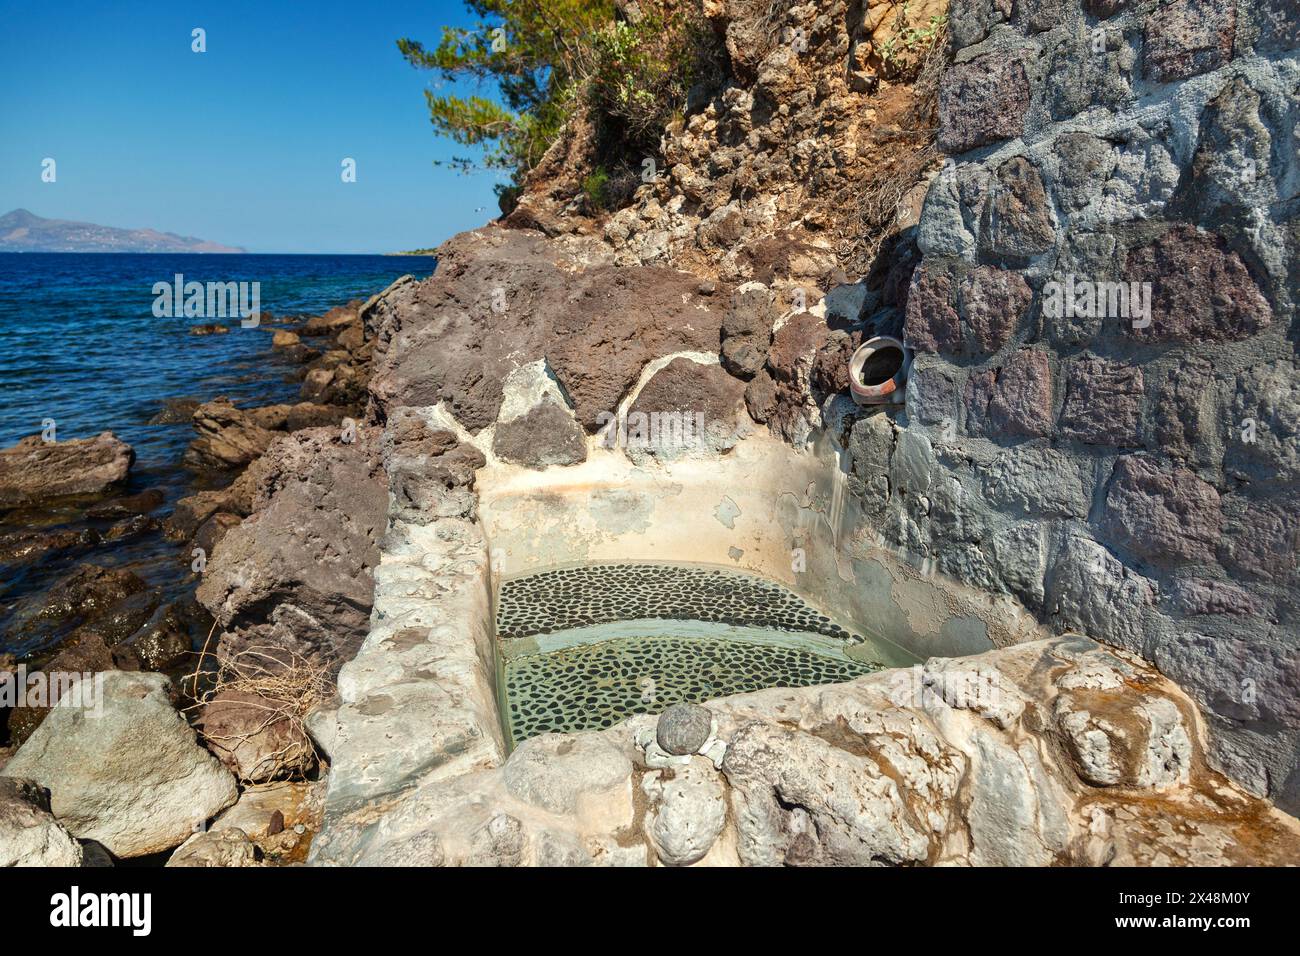 Le cosiddette Terme di Pausania a Methana, Grecia, presentano una piccola piscina che si riempie ogni 15 minuti per i visitatori che desiderano godersi le acque calde. Foto Stock